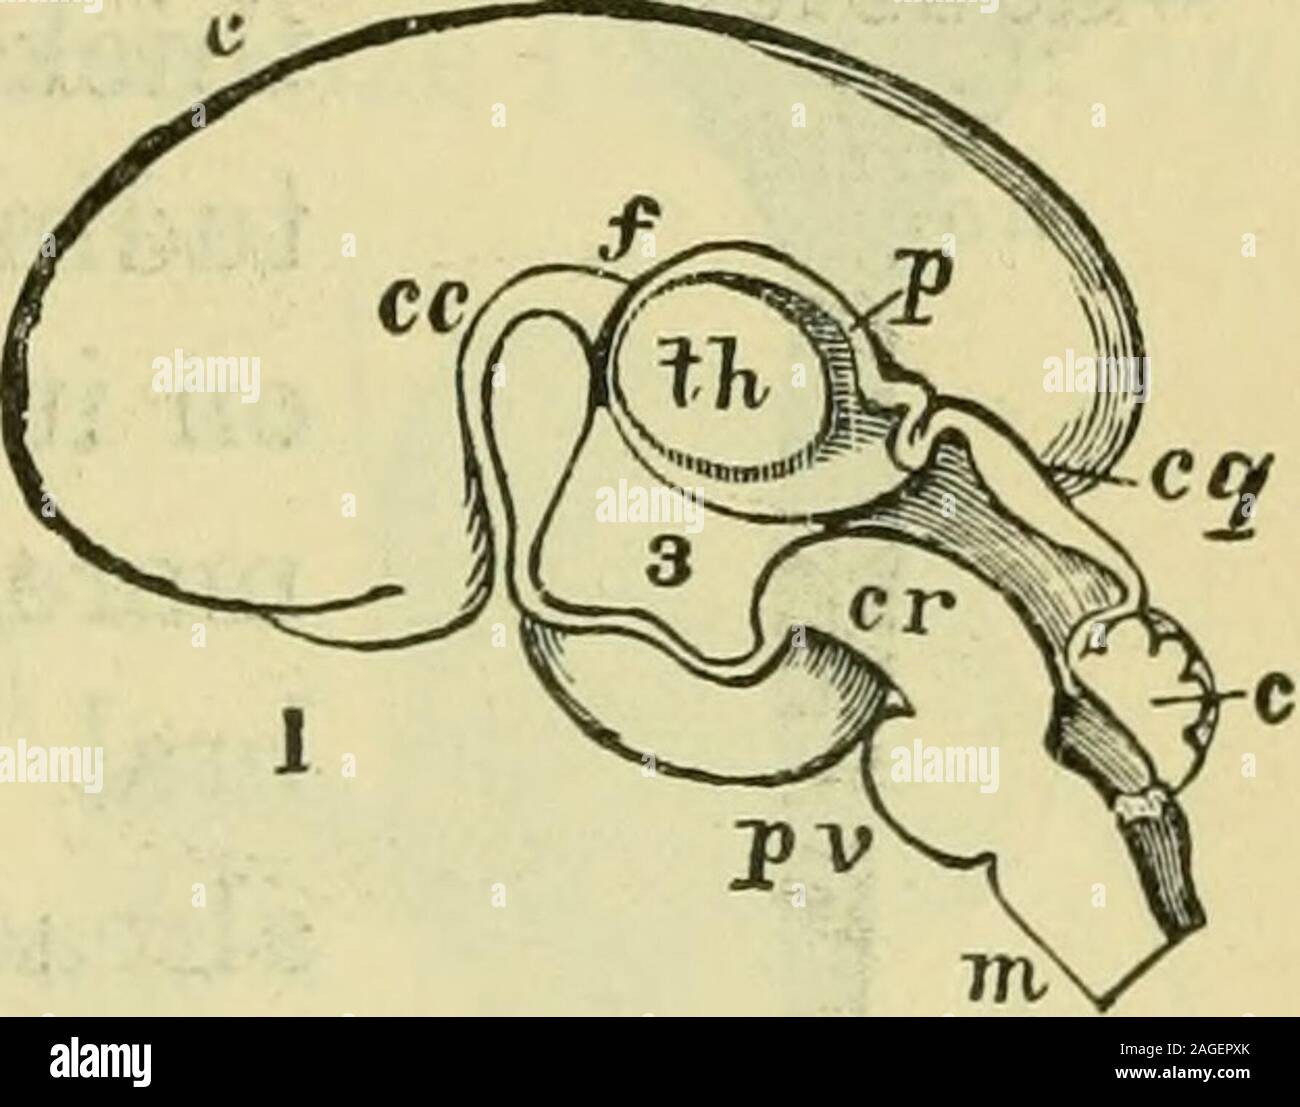 . Il cervello come un organo della mente. w le parti più profonde. 1, me-dulla oblongata; 2, cervelletto; 3, corpora quadrigemina; 4, thalami optici; 5, tbohemisphere sviati; 6, striato incorporato nel hcmispheie ;7, l'inizio del corpo calloso. F, il lato interno della metà destra dello stesso cervello fcparatcd da una sezione verticalmedian, mostrando la centrale o cavità ventricolare. 1, 2, del midollo spinale midollo cordand oljlongata, cava ancora ; 3, l)eiKl al quale il pons Varolii è formata ;4, cervelletto ; 5, lamina (cerebellare superiore i)eduncles)4)assing fino al corporaquadrigemina Foto Stock